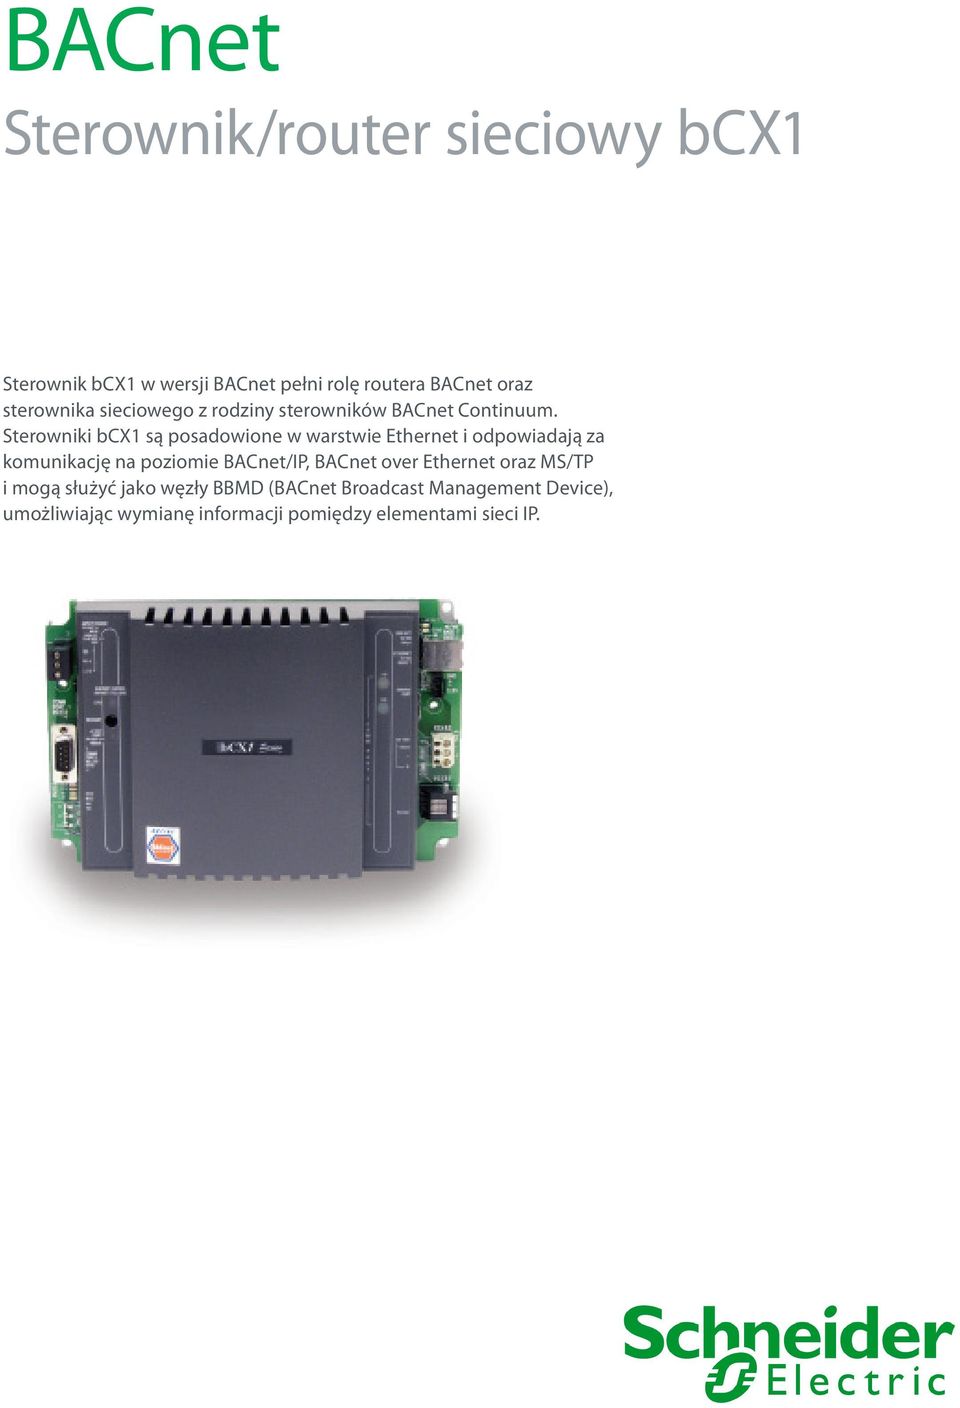 Sterowniki bcx1 są posadowione w warstwie Ethernet i odpowiadają za komunikację na poziomie BACnet/IP,